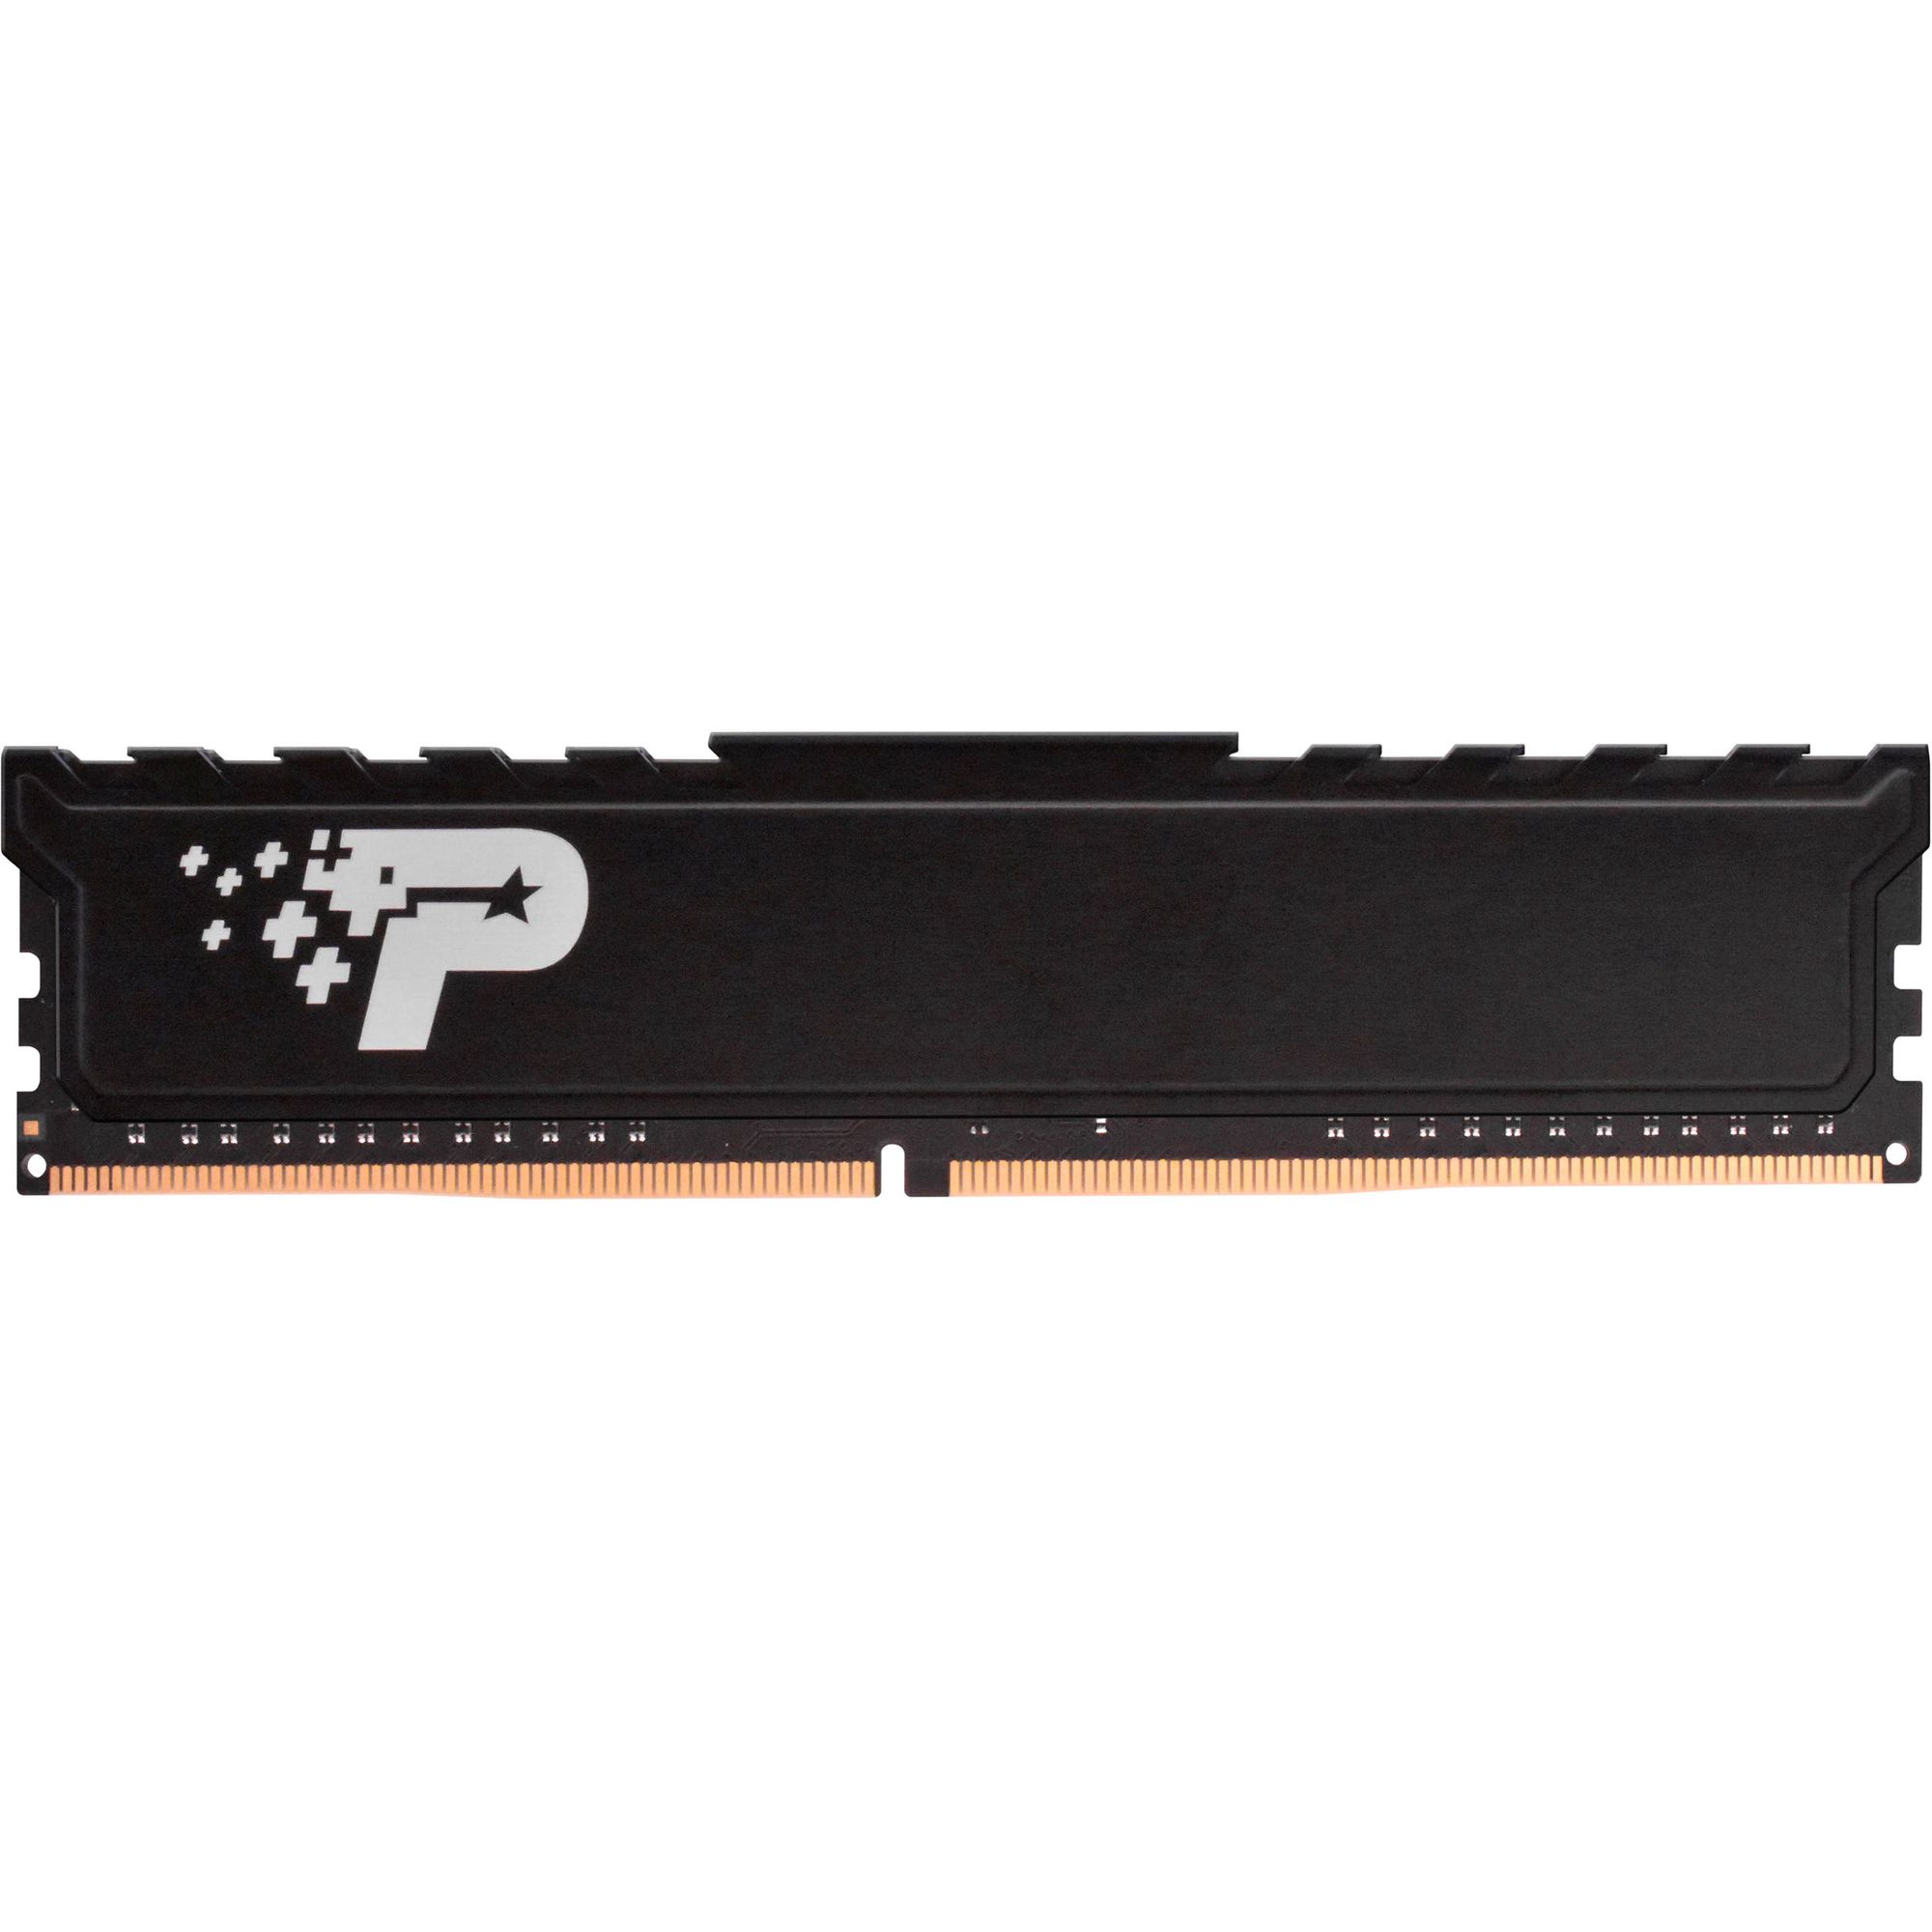 Память оперативная DDR4 Patriot Memory SL Premium 16Gb 2666MHz (PSP416G26662H1) память оперативная ddr4 patriot sl premium 16gb 8gbx2 2666mhz psp416g2666kh1